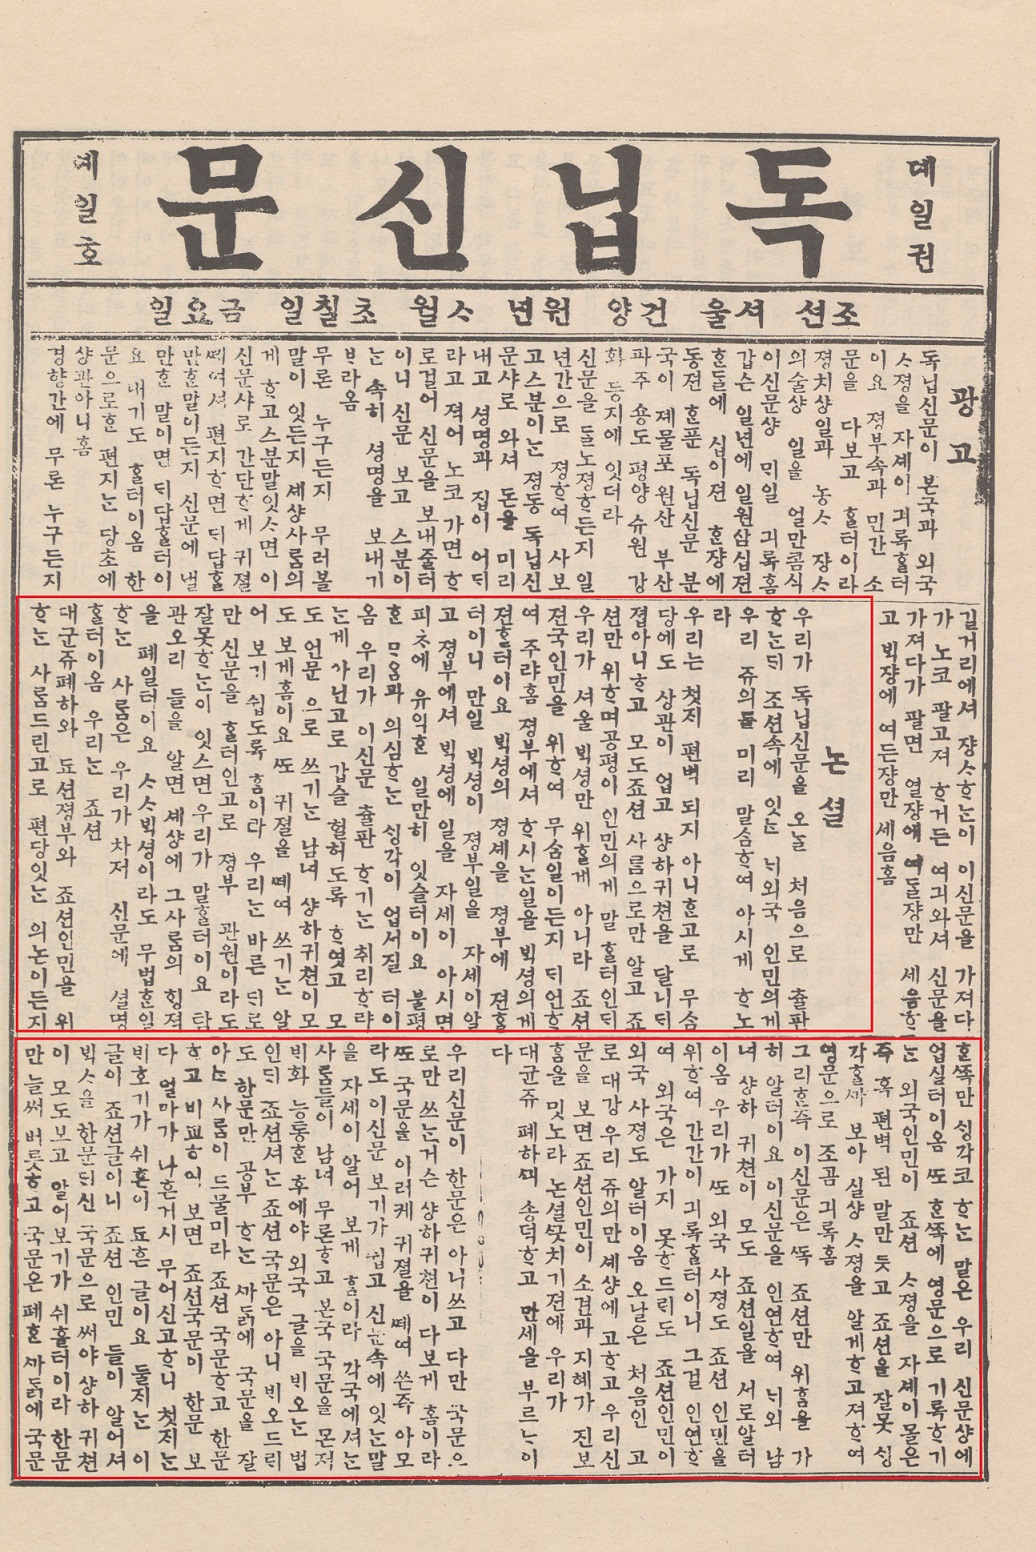 자료1. 『독립신문』 창간호의 제1권 제1호(1896.4.7.)